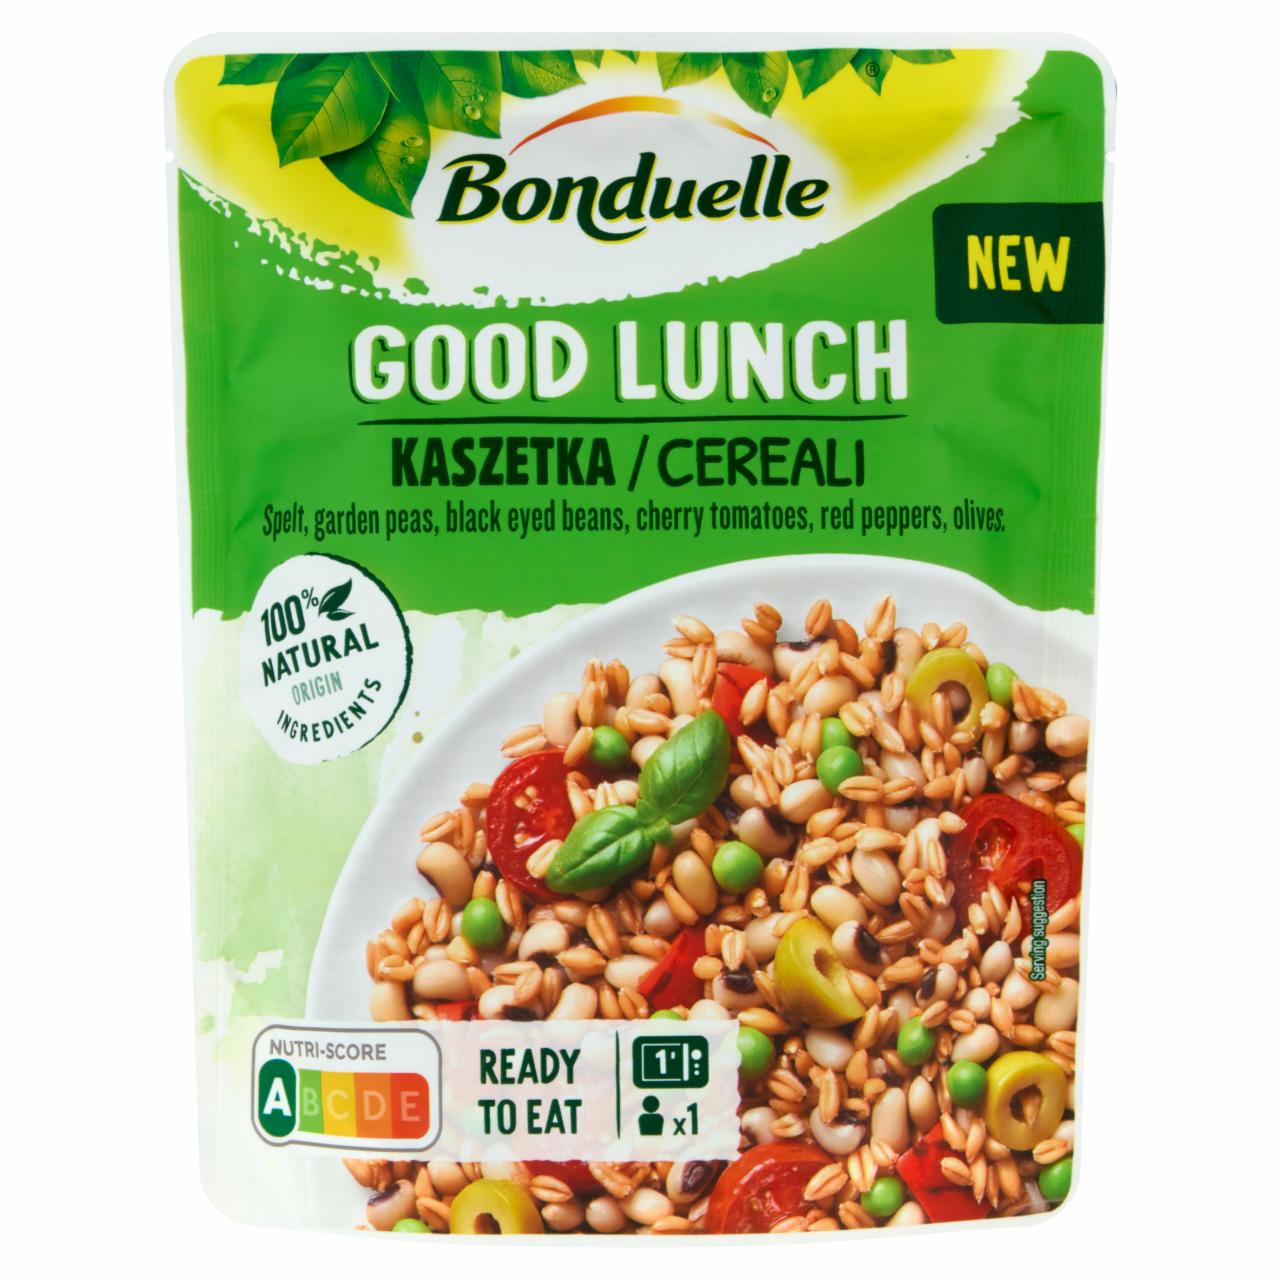 Képek - Bonduelle Good Lunch tönkölybúza, zöldborsó, bab, paradicsom, paprika és olajbogyó keveréke 250 g